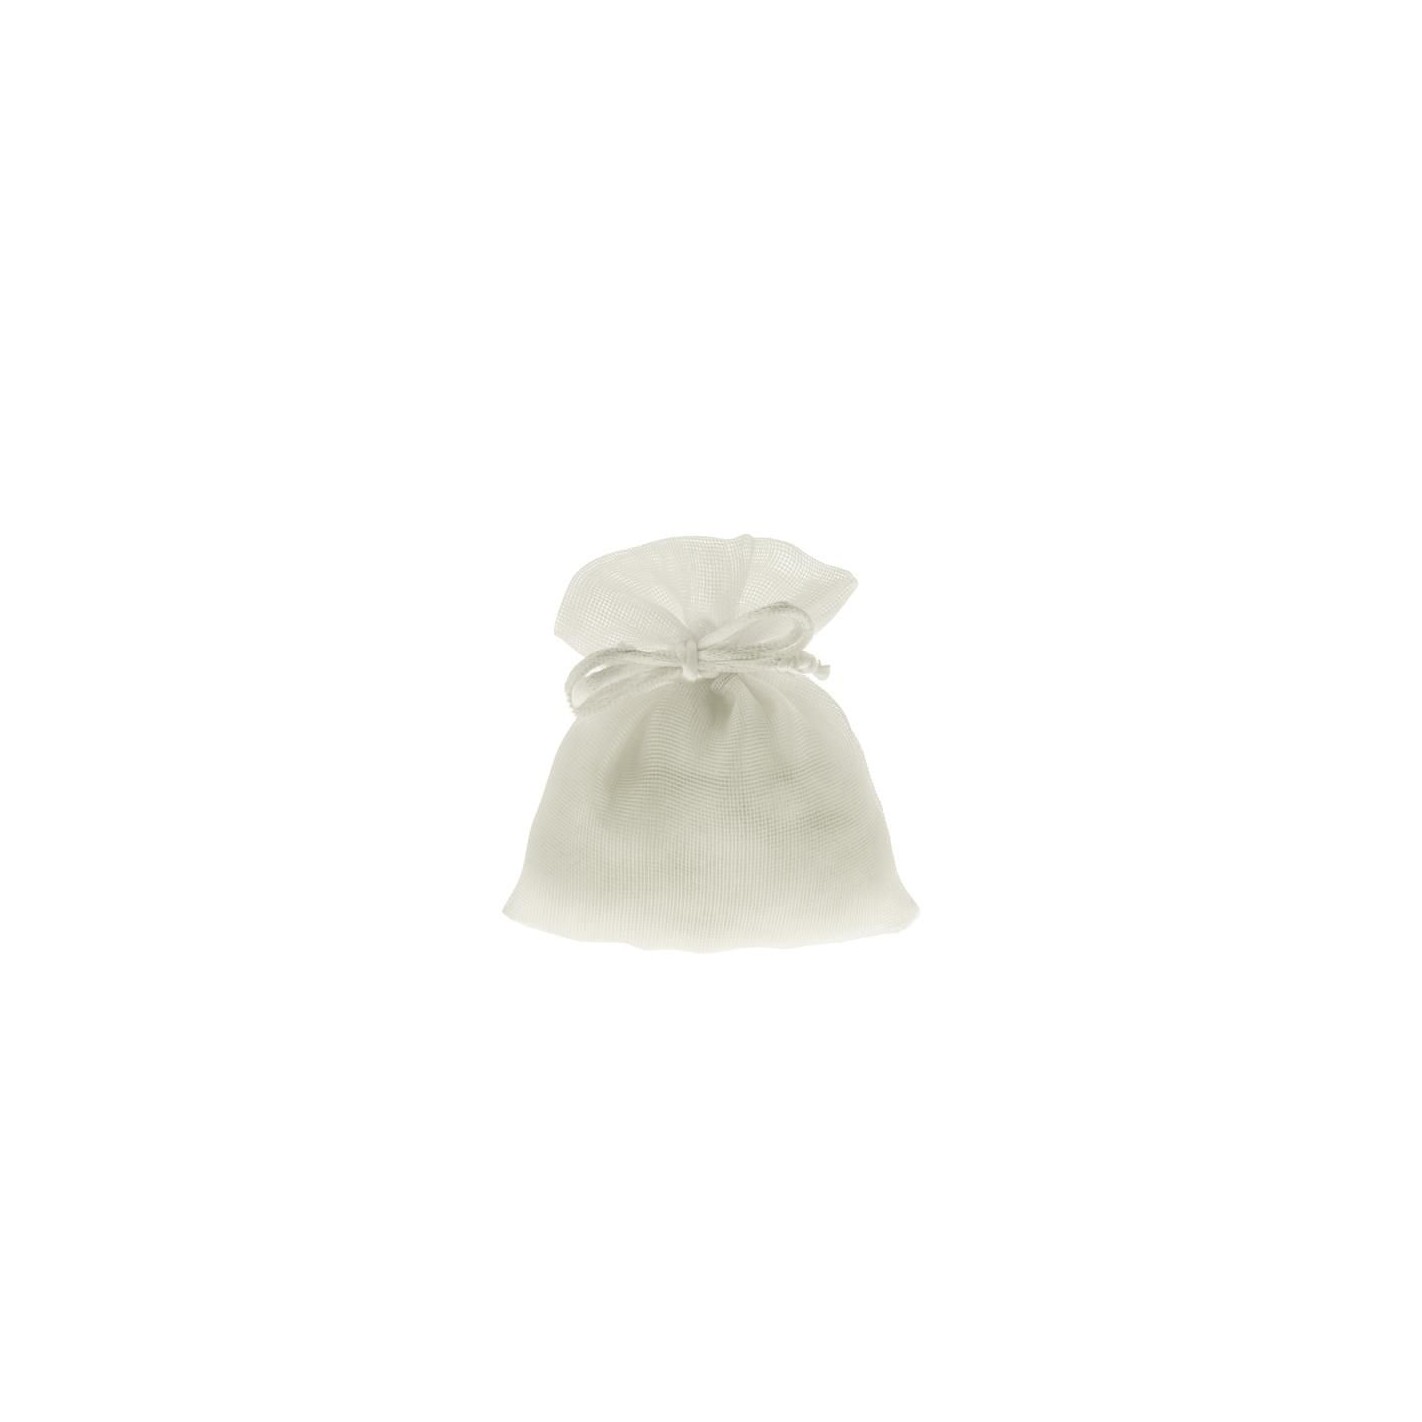 10 Sacchetti pouches BIANCO - tulle in organza per confetti confettate -  25cm